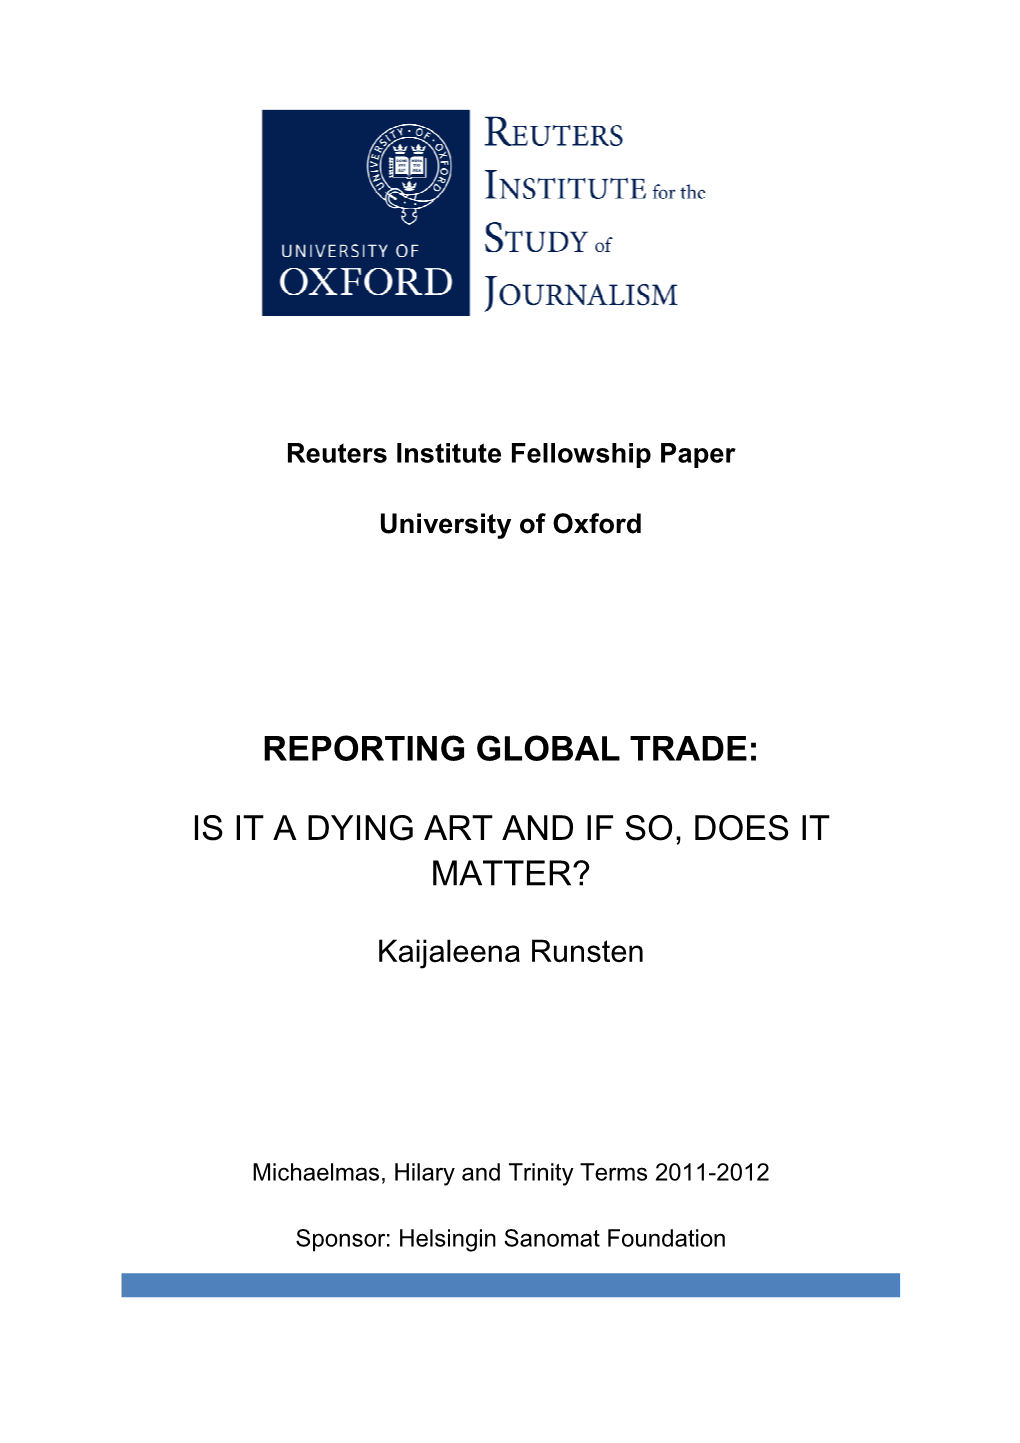 Reporting Global Trade